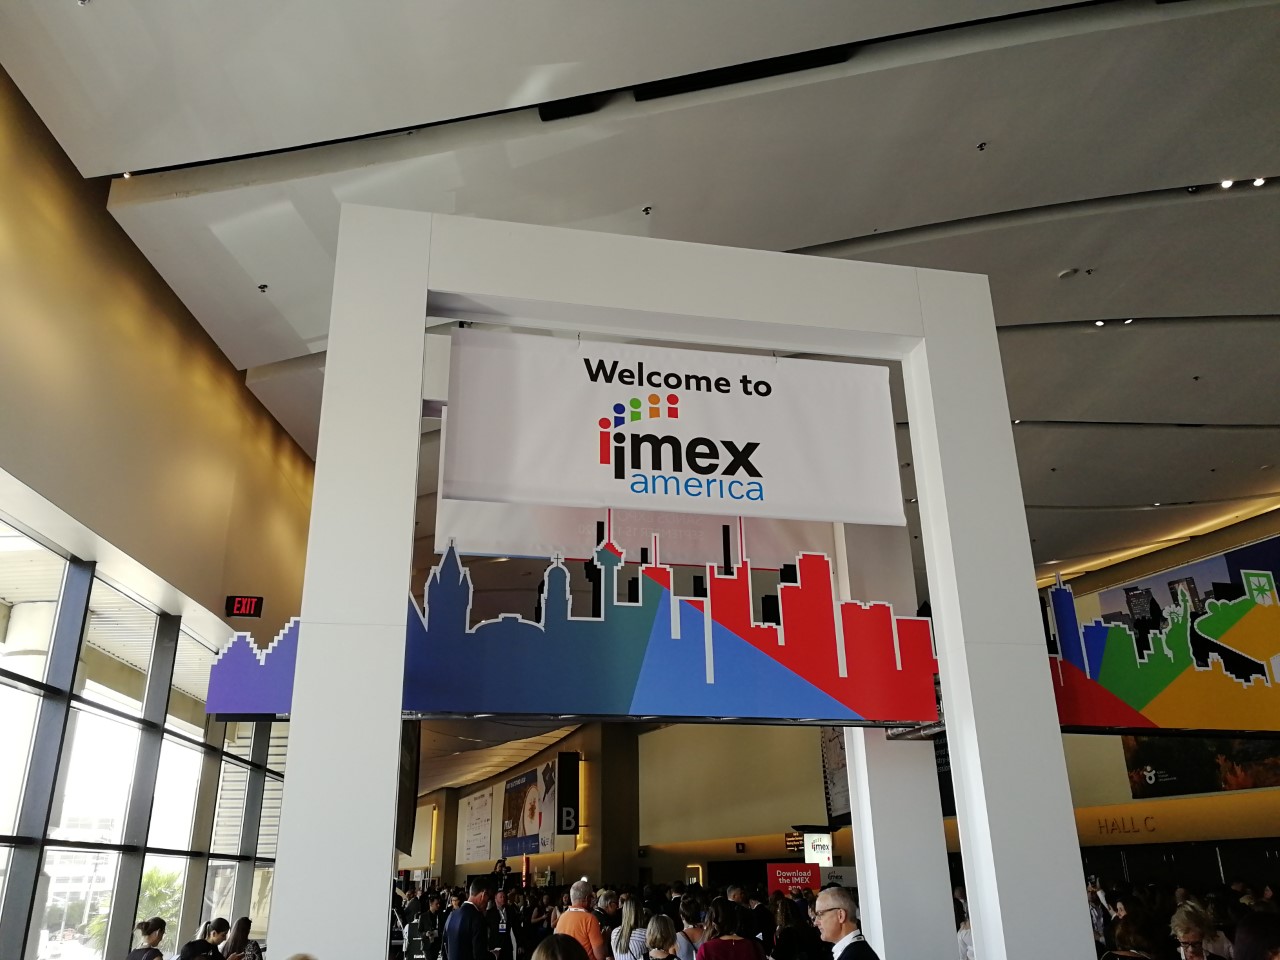 IMEX America is underway in Las Vegas!